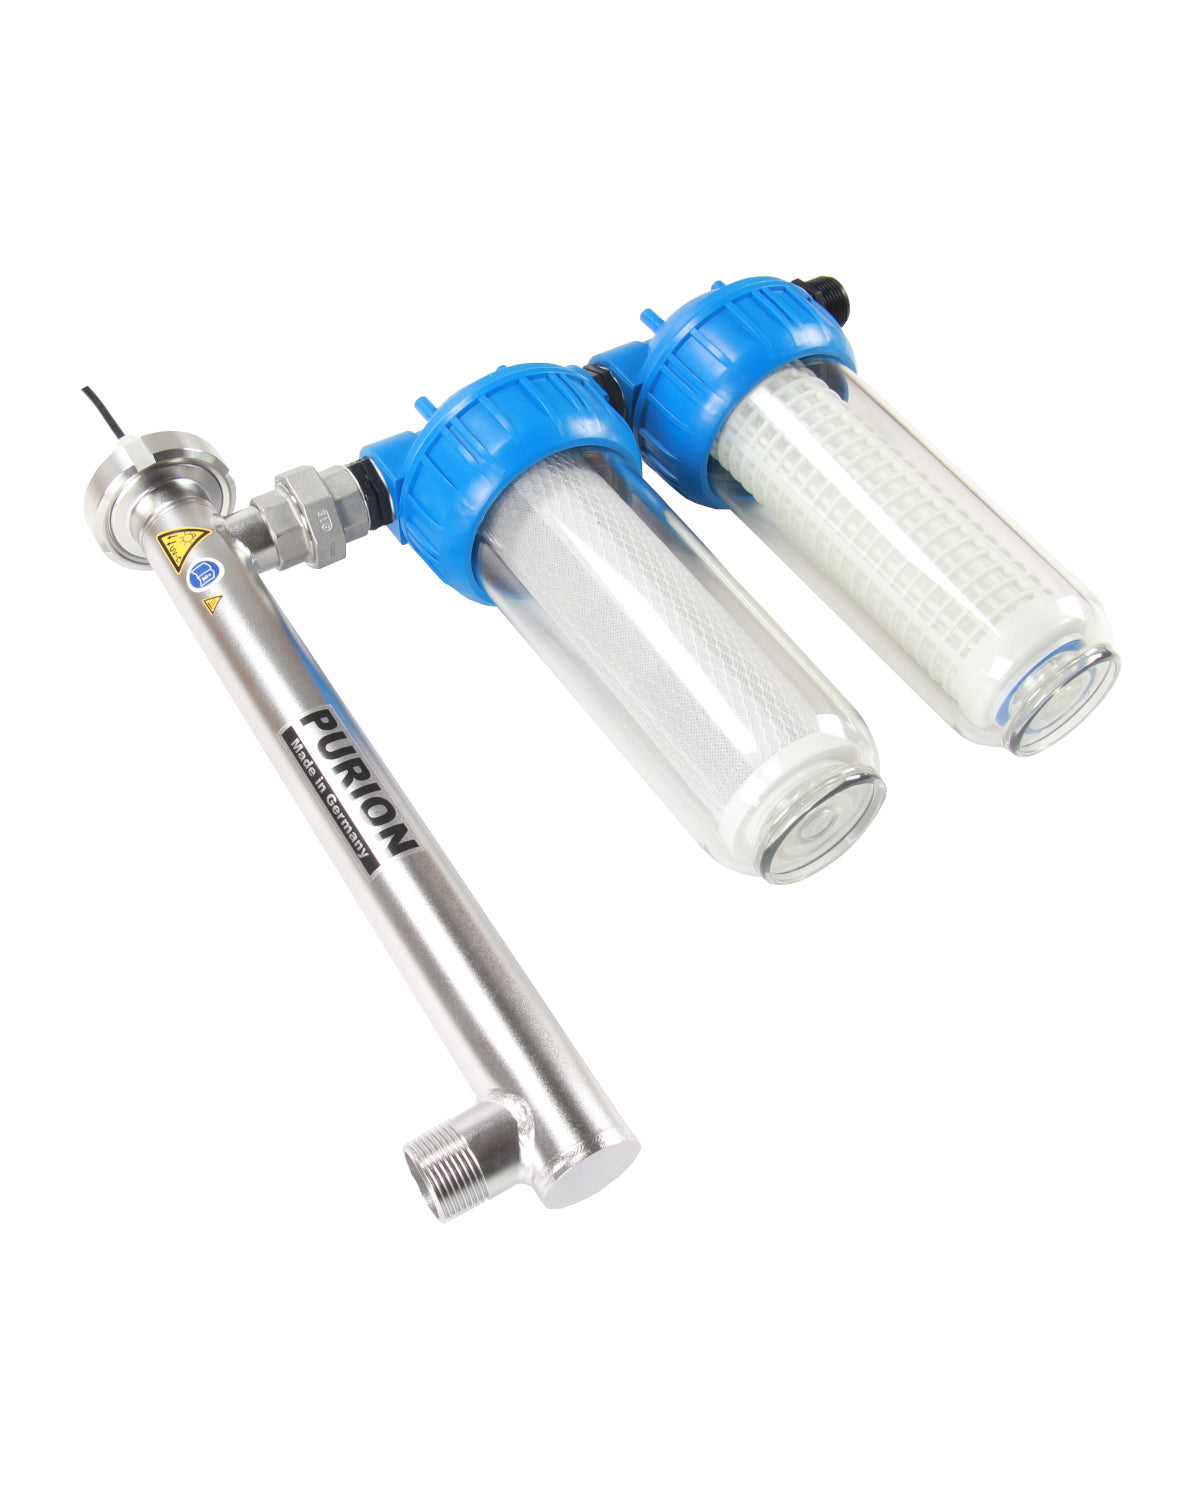 Ein blau-silberner PURION 1000 Starter-Wasserfilter mit blauem Griff, der zum Filtern von Trinkwasser mit dem PURION GmbH-System entwickelt wurde.